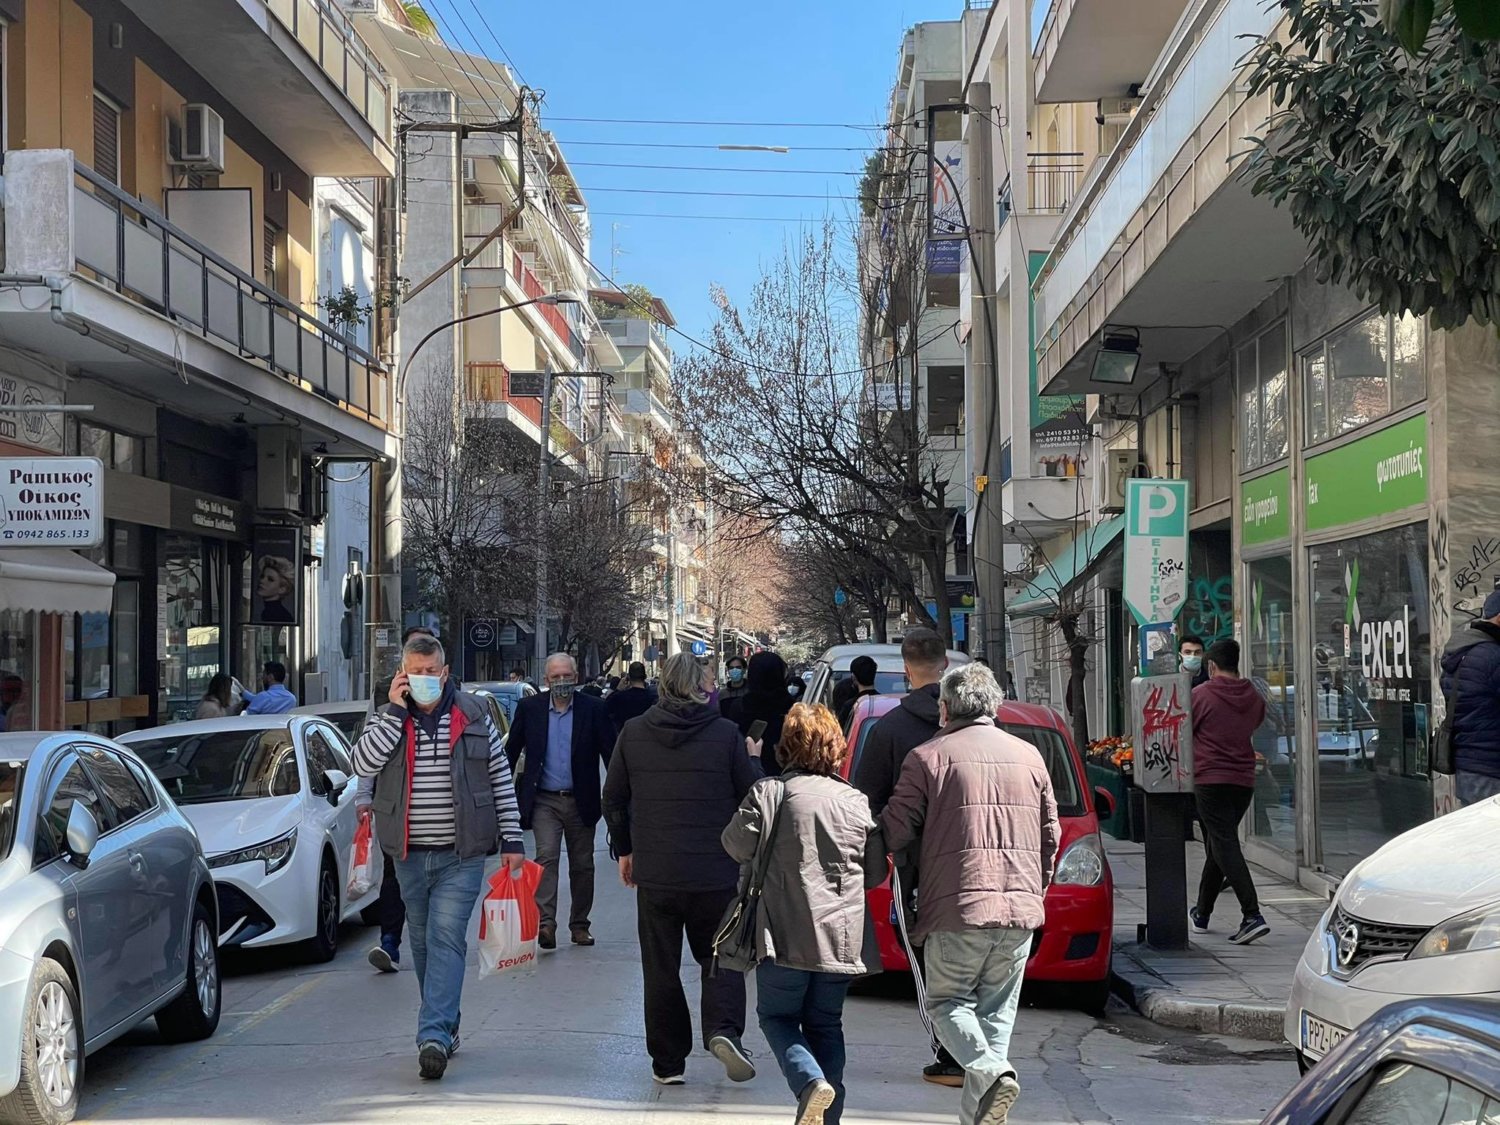 Ισχυρή σεισμική δόνηση στη Λάρισα – Στους δρόμους οι πολίτες (φωτο)